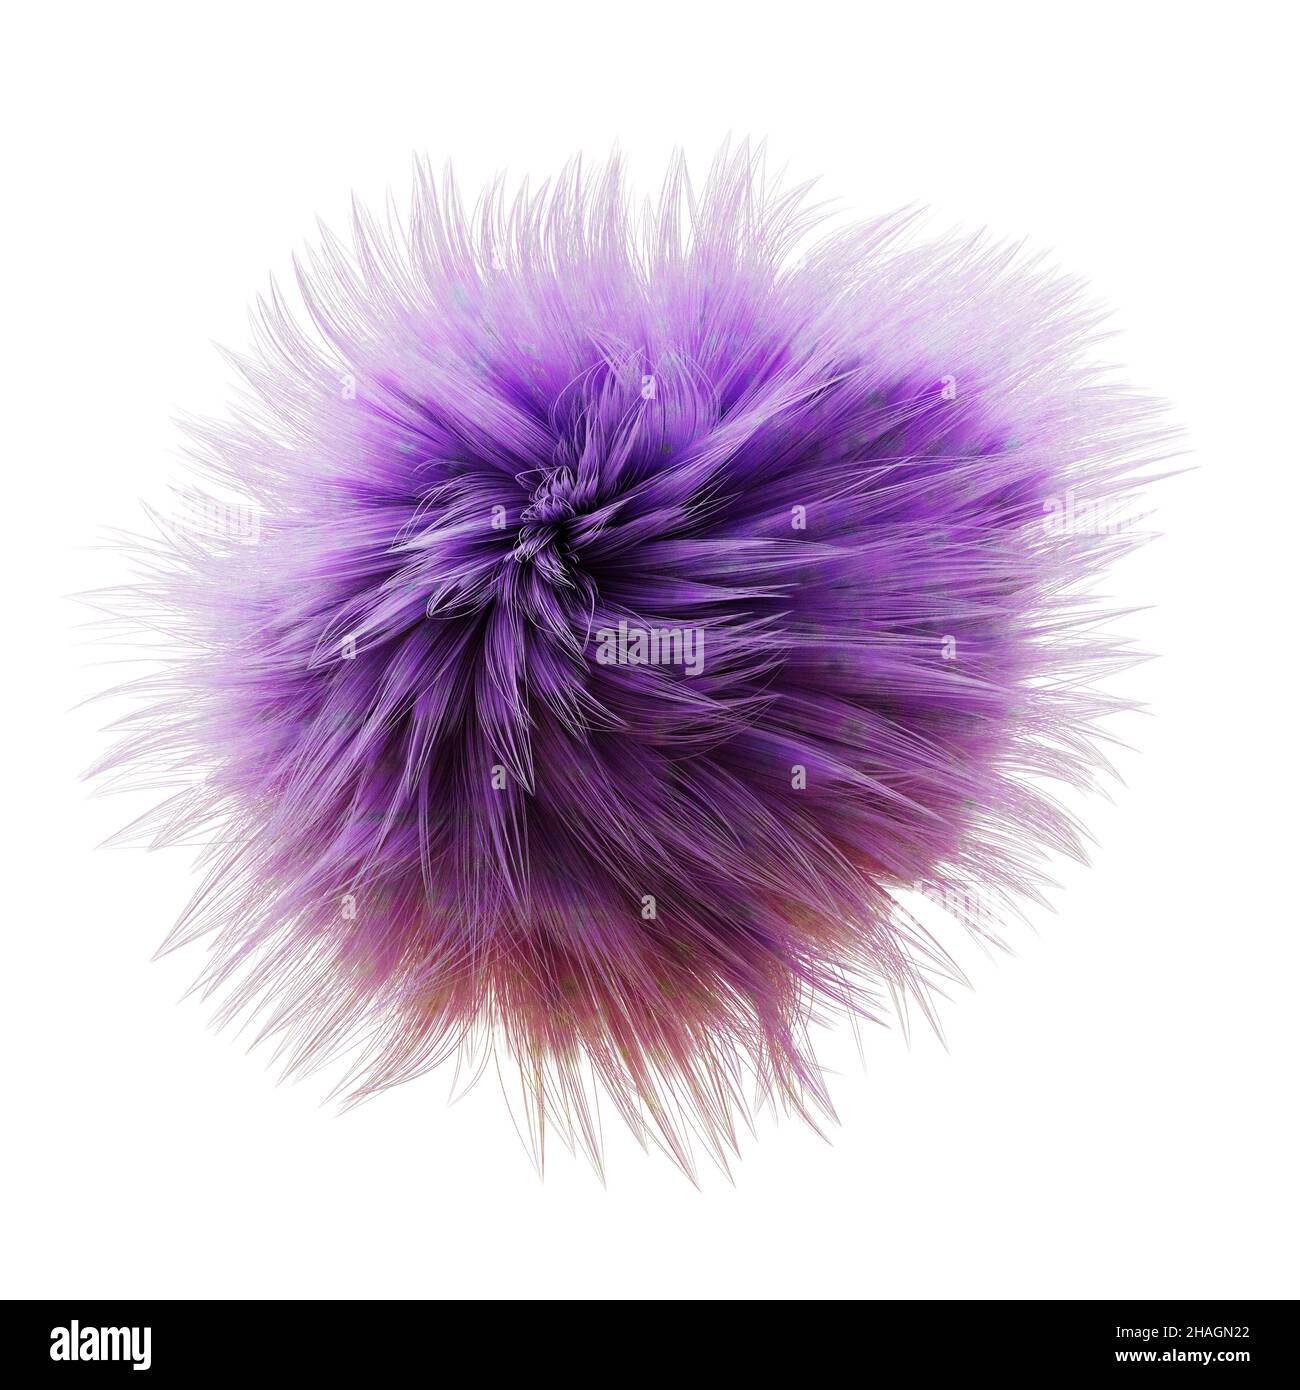 palla soffice, sfera viola furry isolato su sfondo bianco Foto Stock